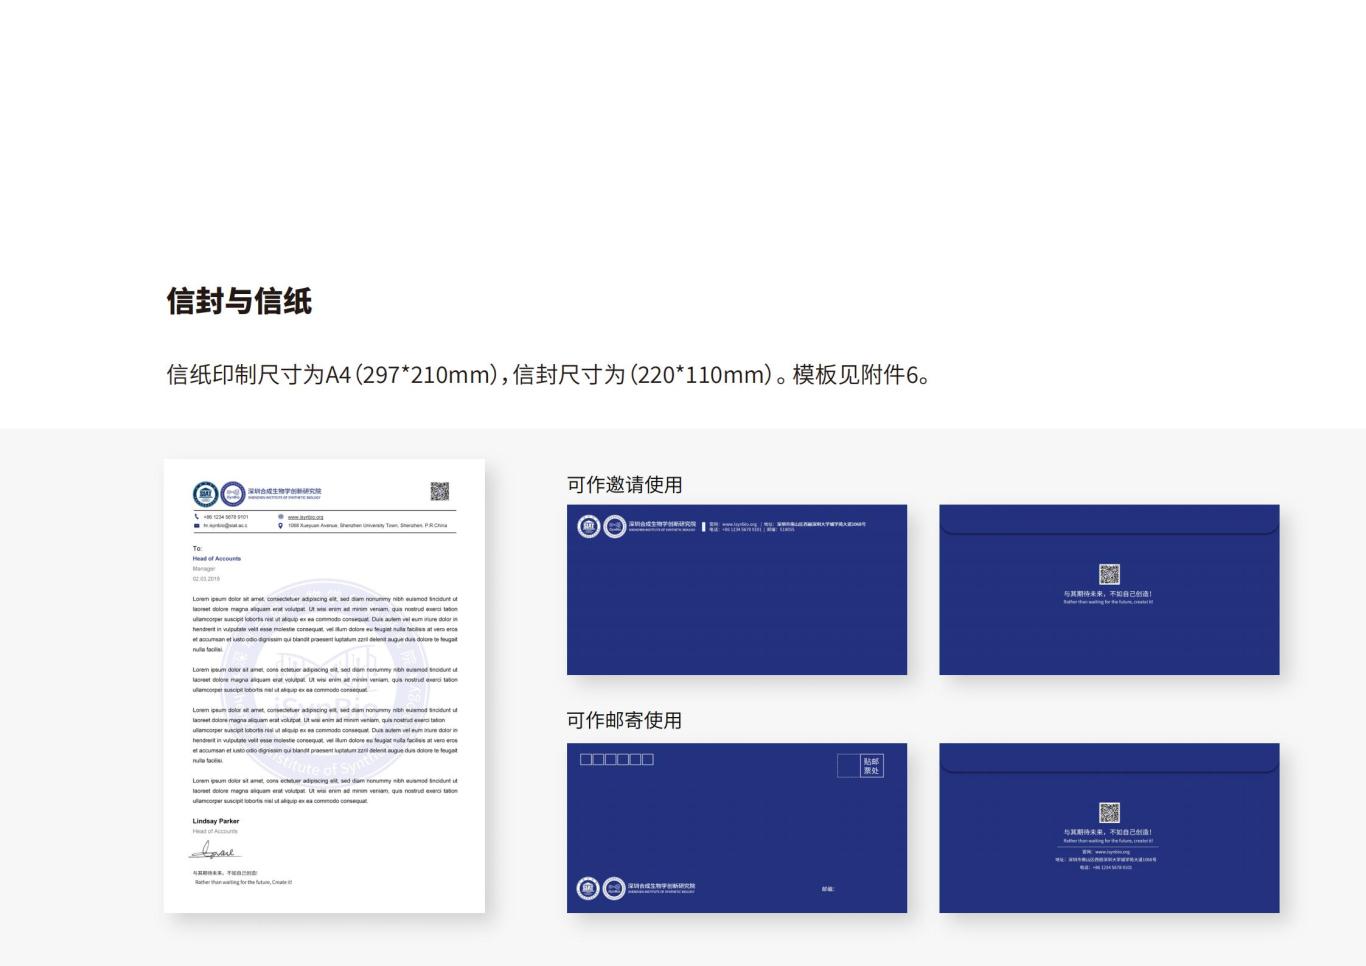 深圳合成生物学创新研究院品牌设计规范图29